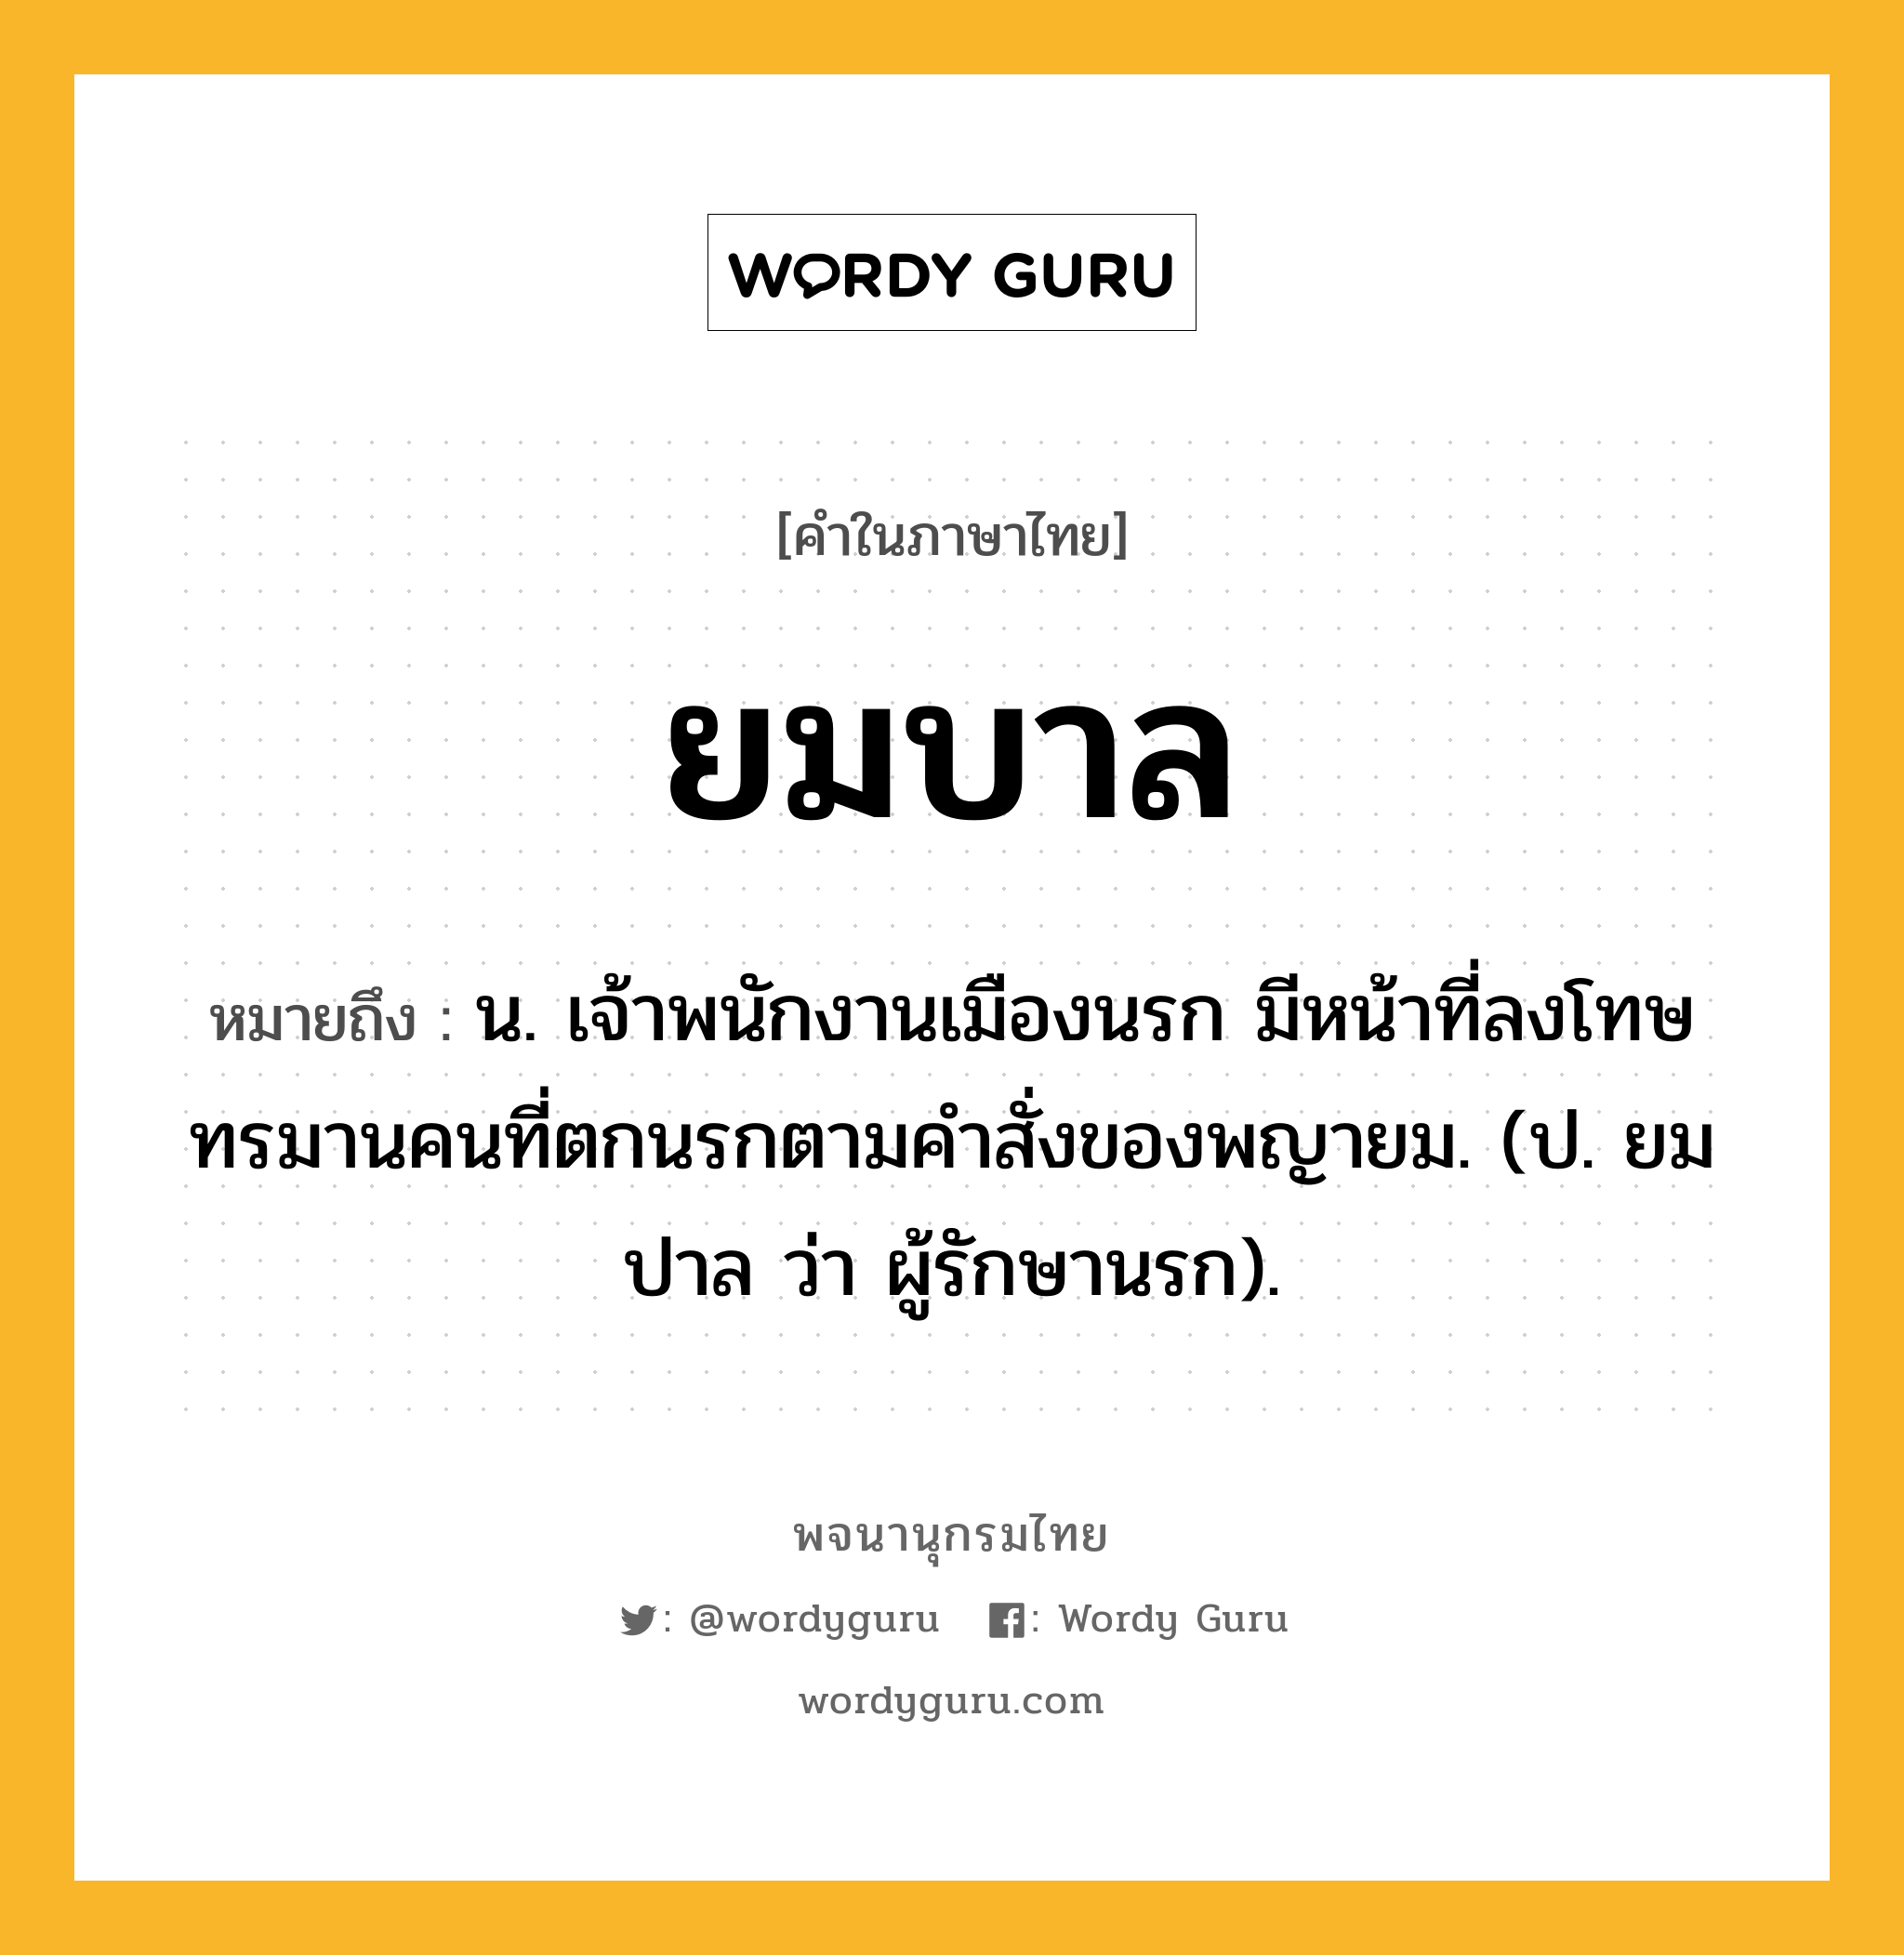 ยมบาล ความหมาย หมายถึงอะไร?, คำในภาษาไทย ยมบาล หมายถึง น. เจ้าพนักงานเมืองนรก มีหน้าที่ลงโทษทรมานคนที่ตกนรกตามคําสั่งของพญายม. (ป. ยมปาล ว่า ผู้รักษานรก).